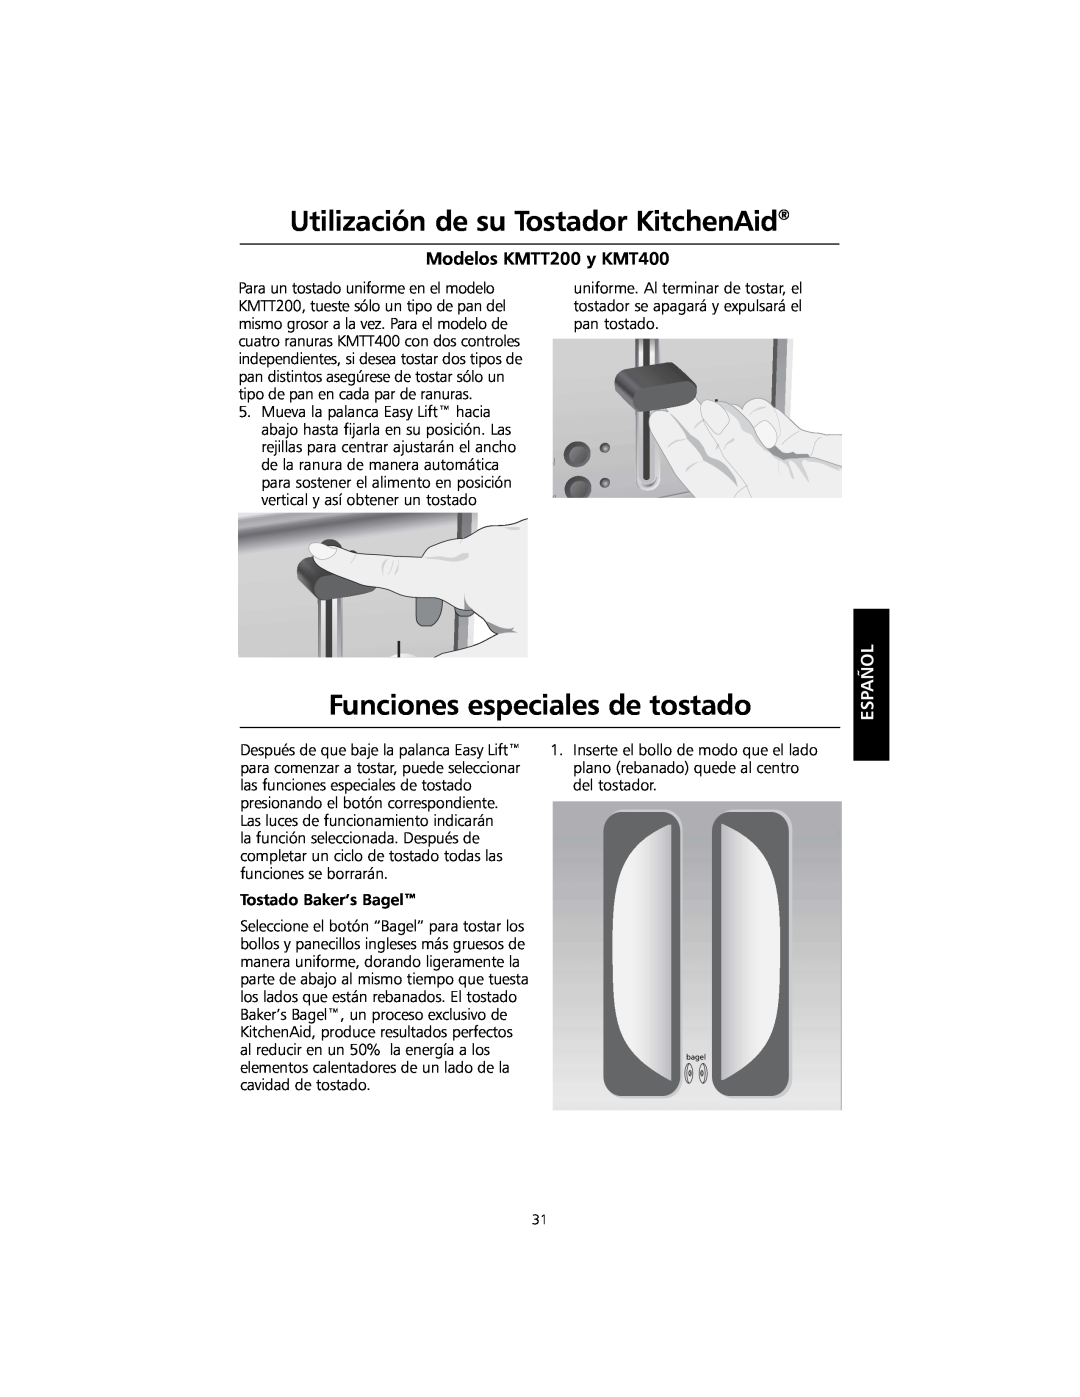 KitchenAid KMTT400 manual Funciones especiales de tostado, Utilización de su Tostador KitchenAid, Modelos KMTT200 y KMT400 